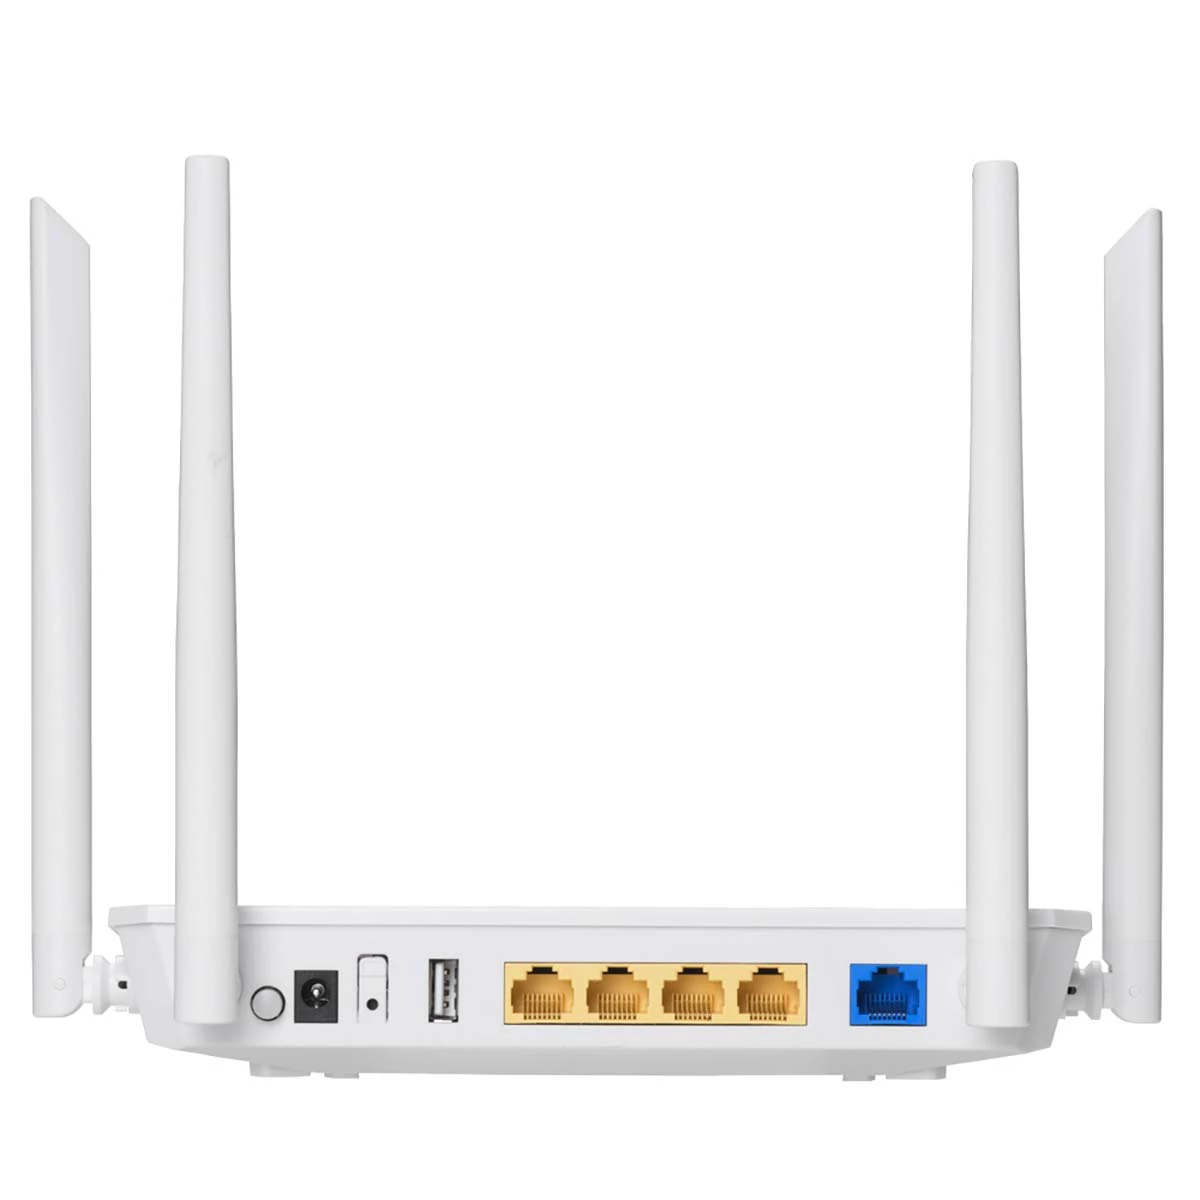 WLAN Router AC1200 2.4/5 GHz (Dual Band) Gigabit Weiss